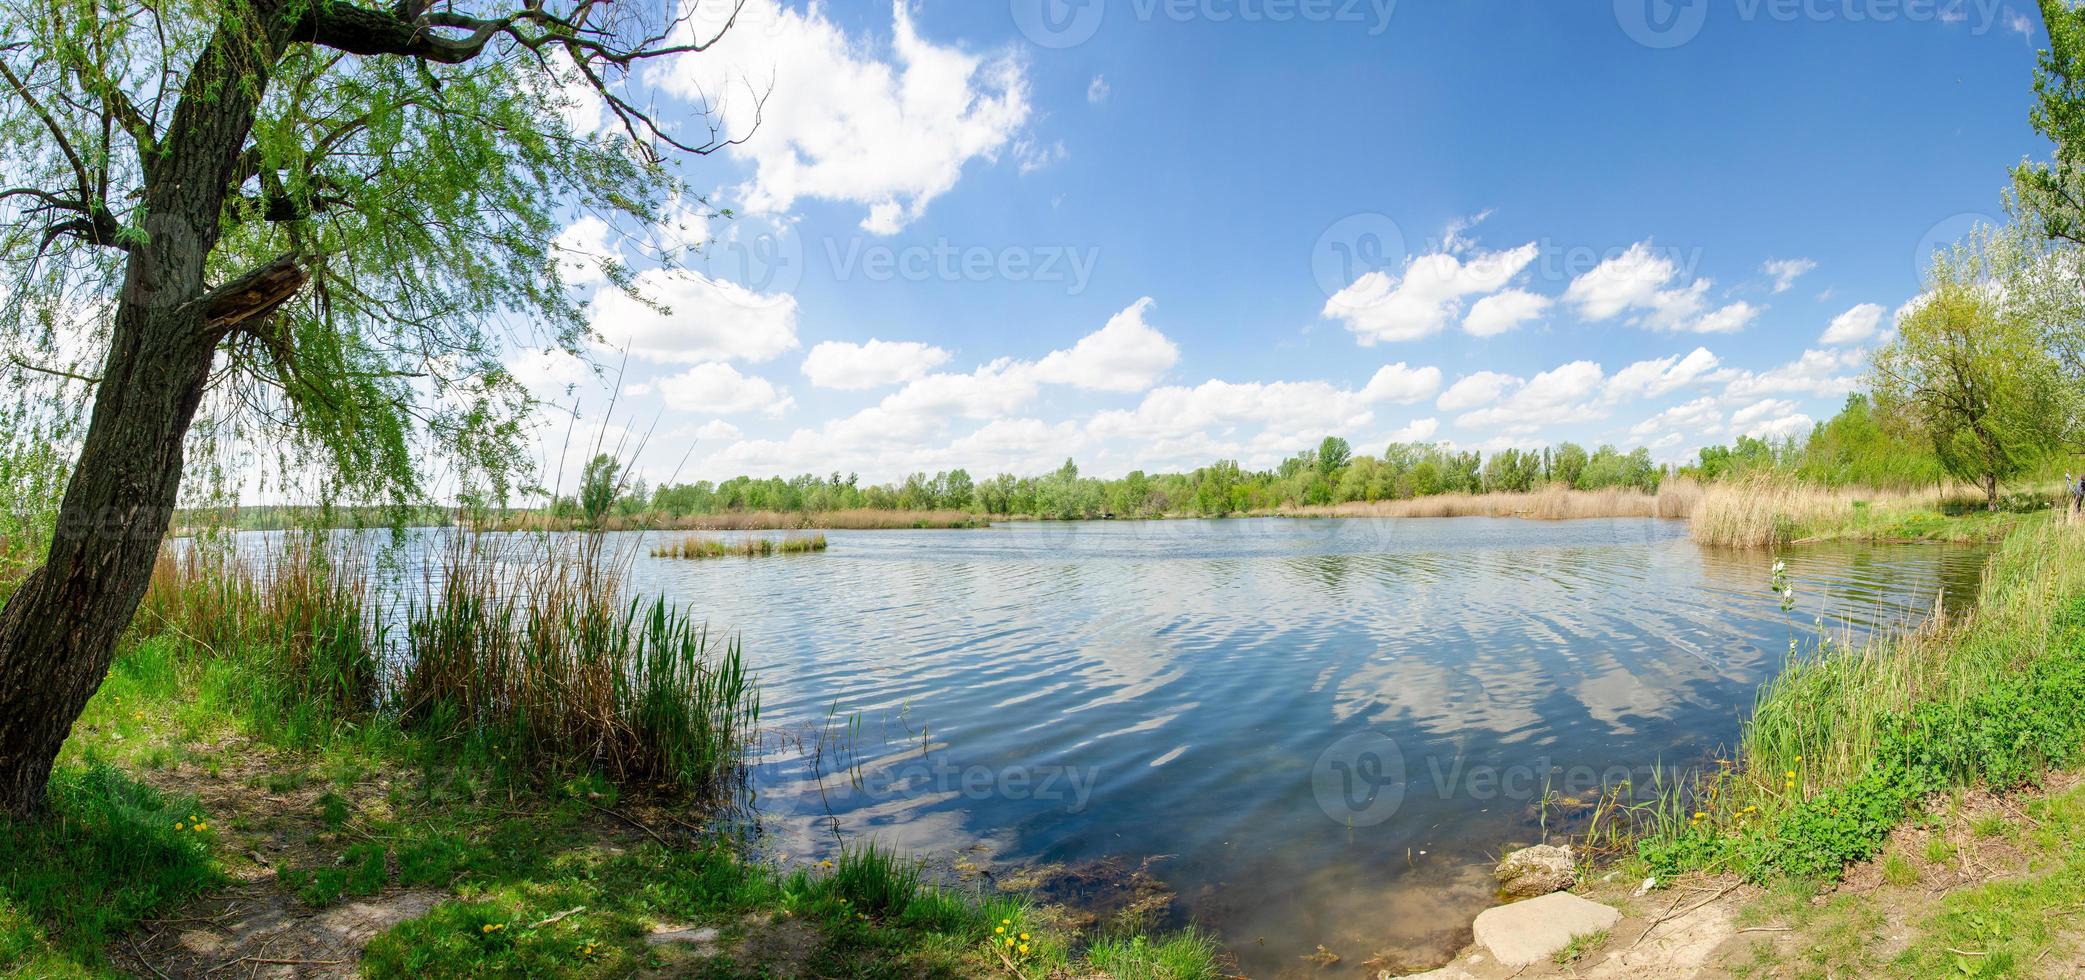 paisagem panorâmica em um dia de verão em um lago com juncos e um céu azul com nuvens foto